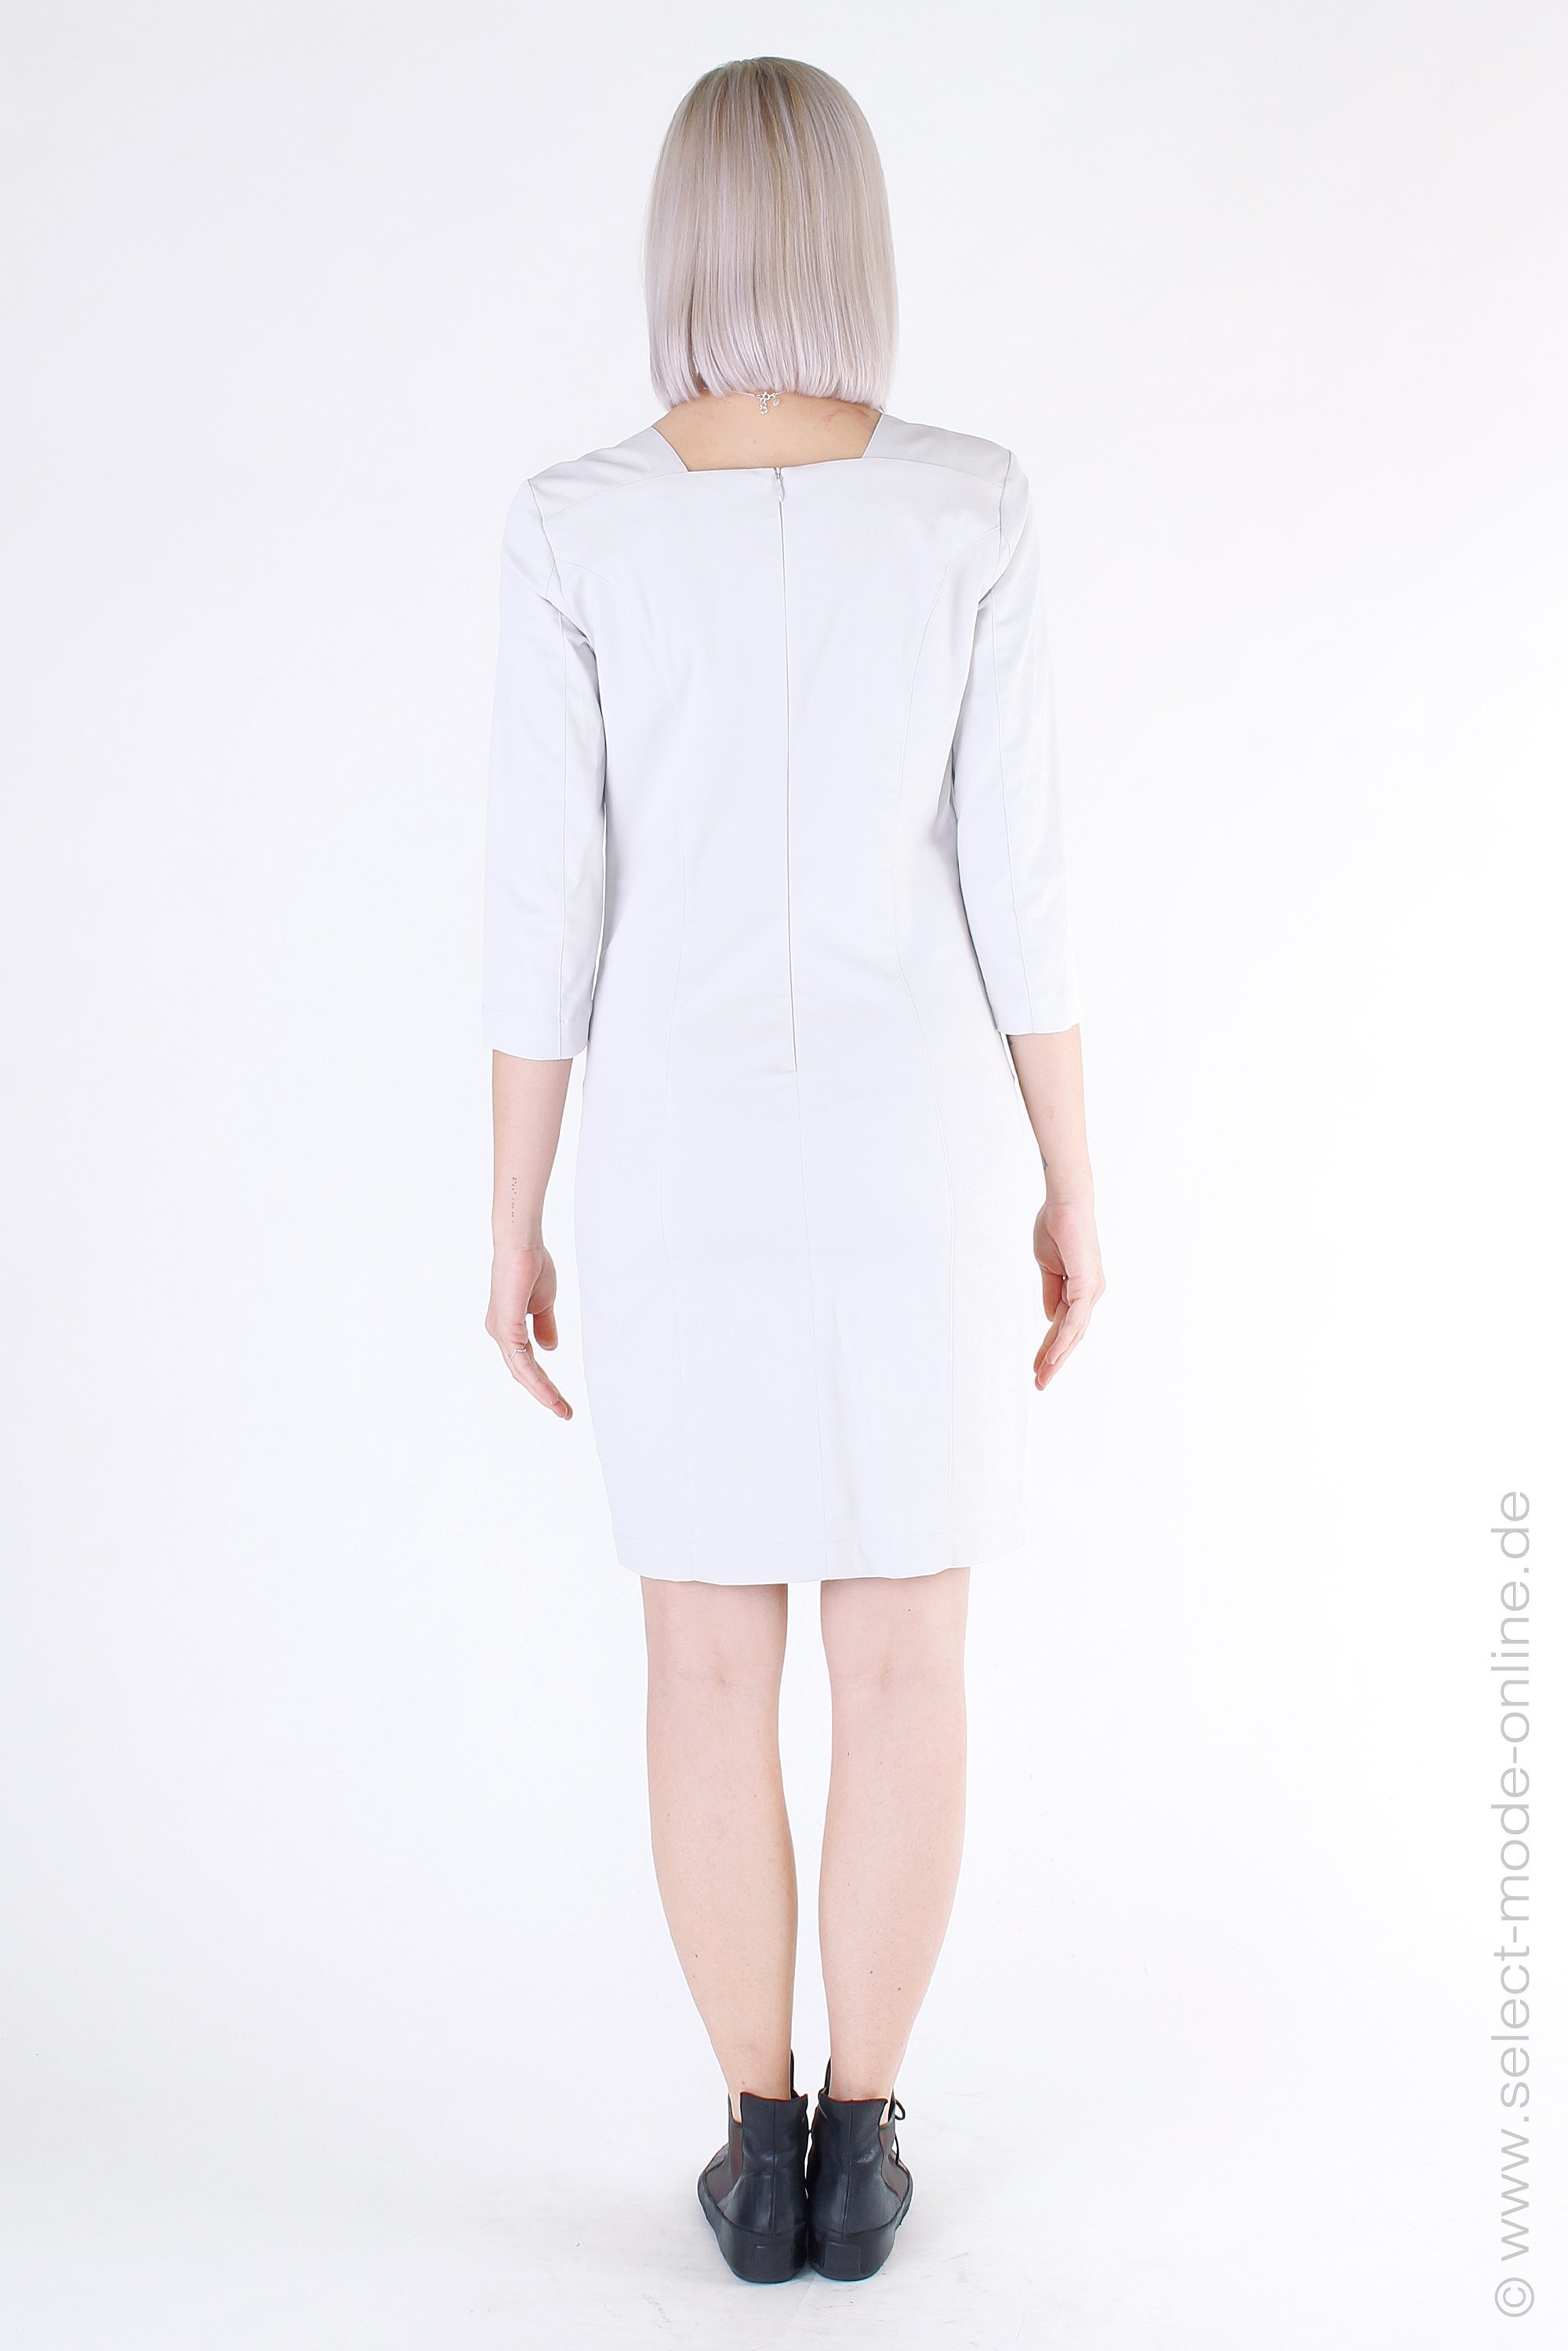 Buy your women's dresses online at Sarah Pacini